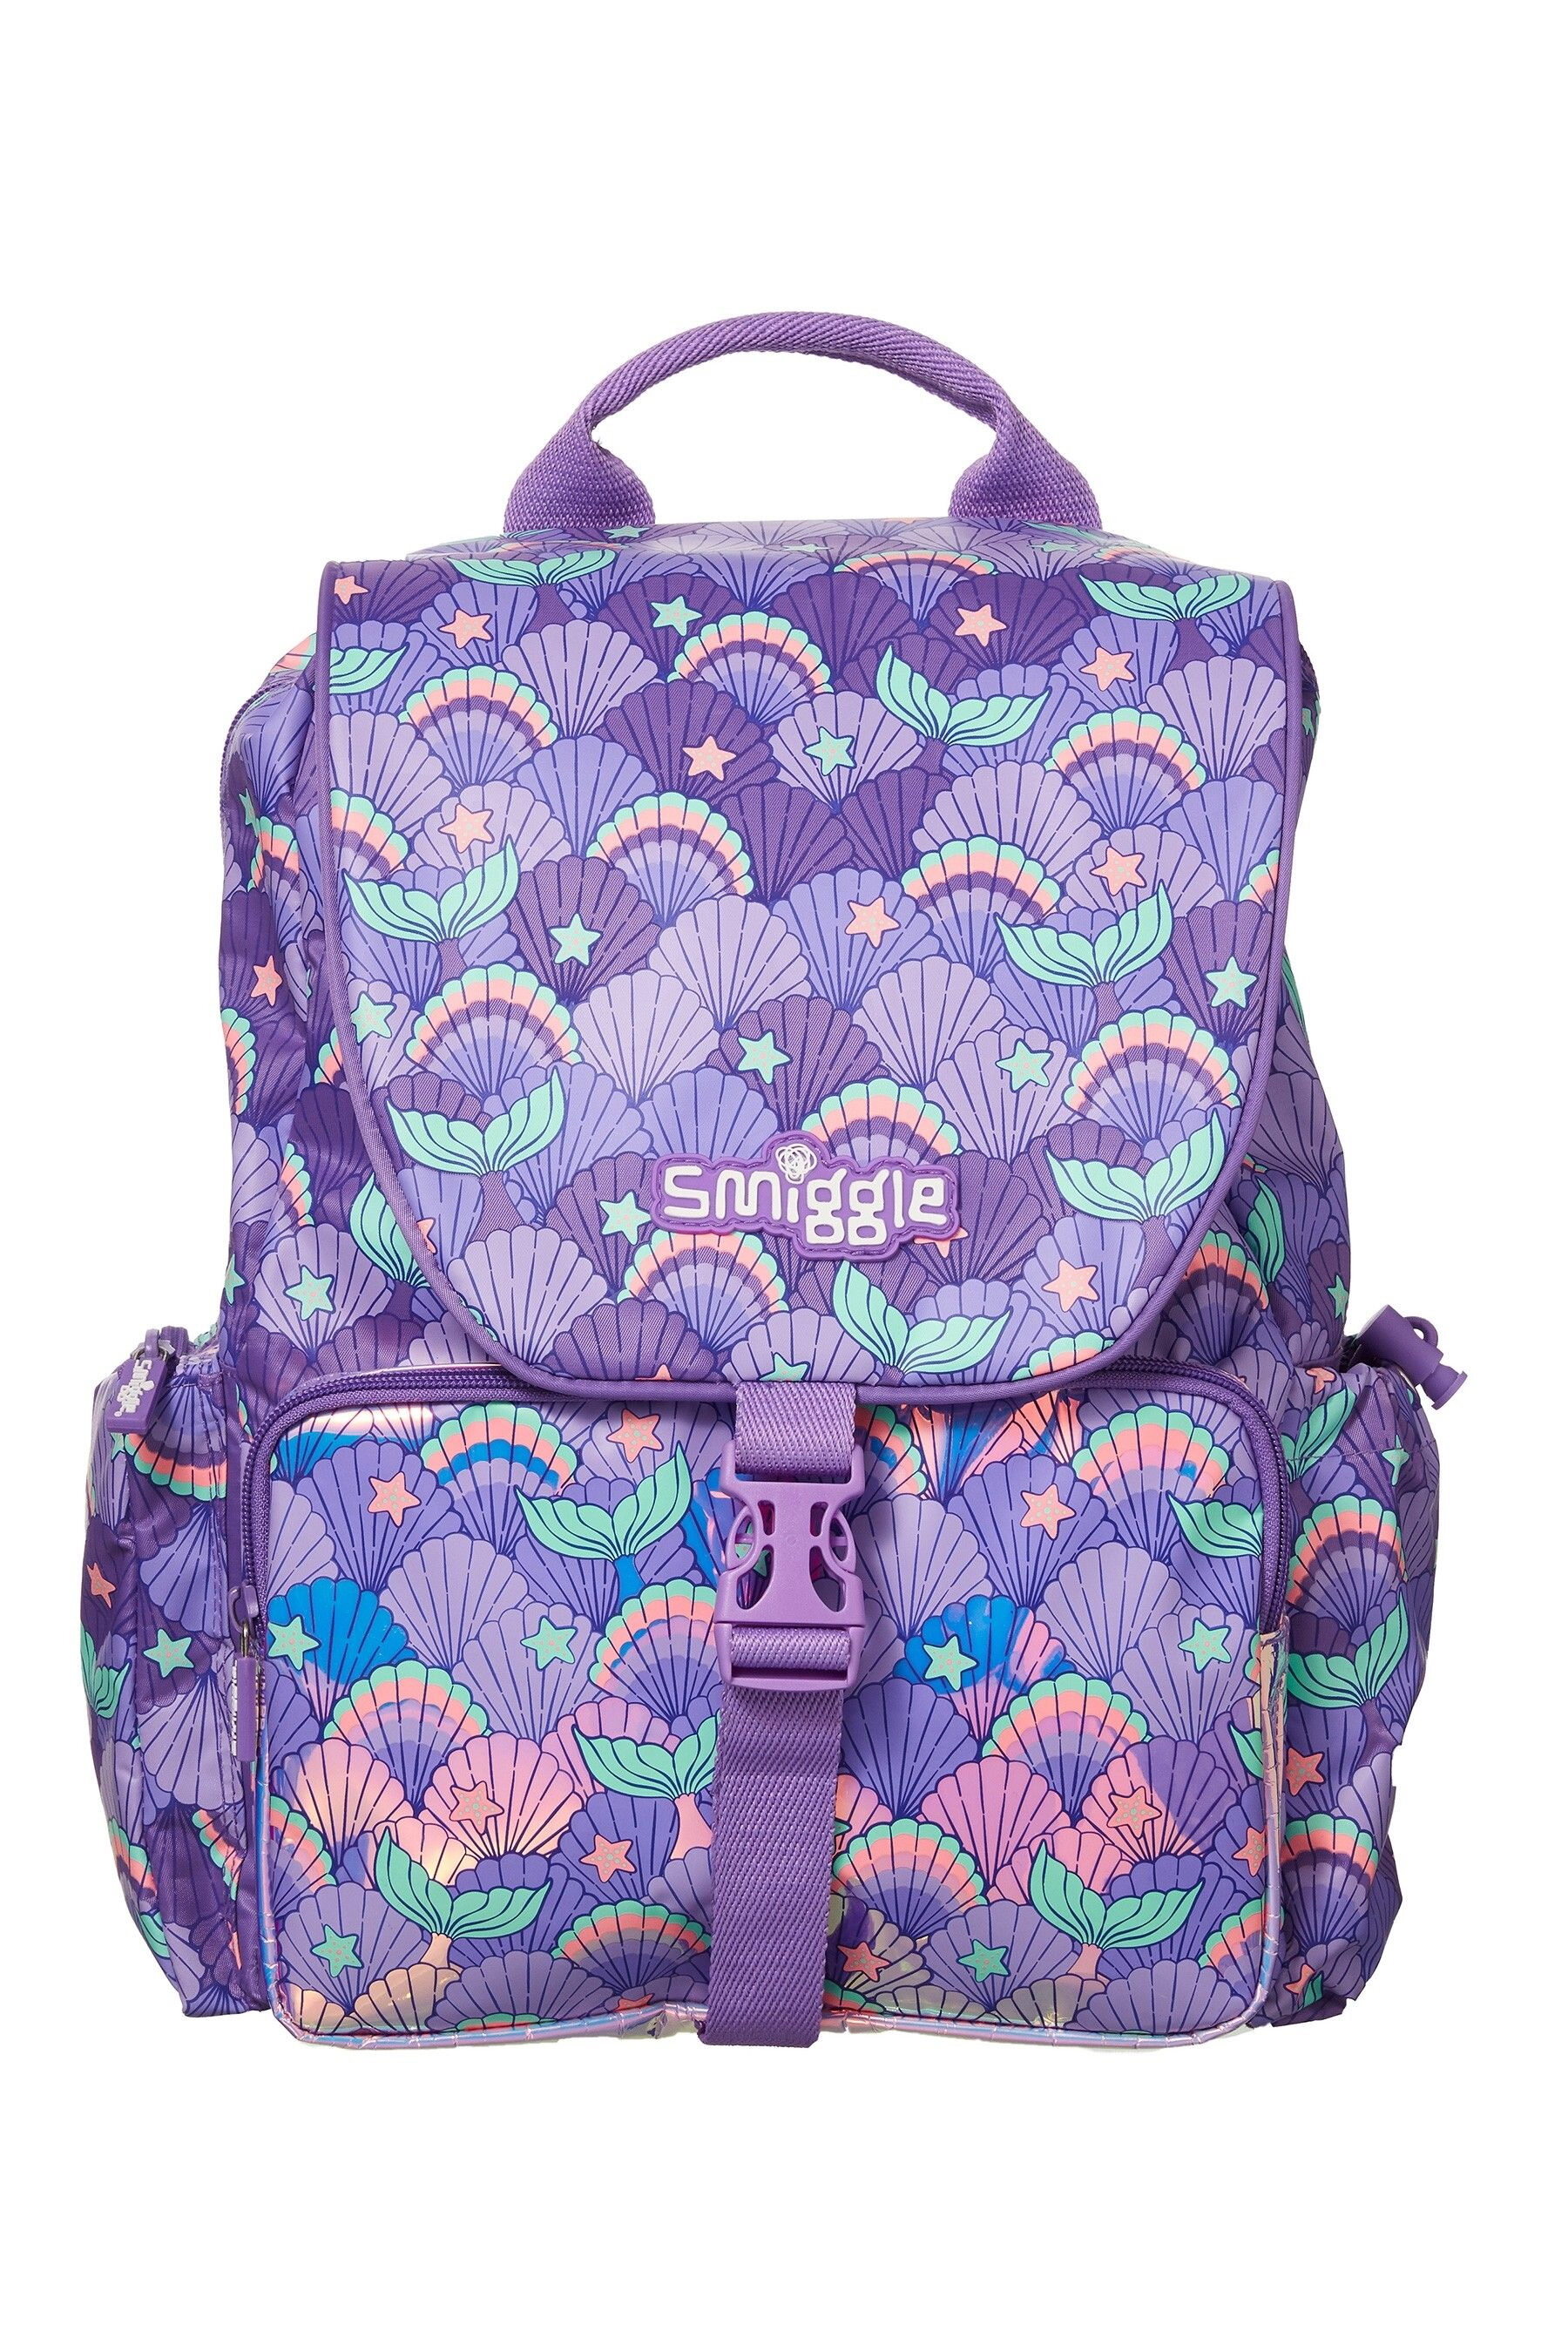 ✈✈Smiggle Viva Chelsea Backpack มี 3 สี  ✈✈ ขนาด 15 นิ้ว ของแท้พร้อมส่ง UK สี Mermaid สี Mermaid